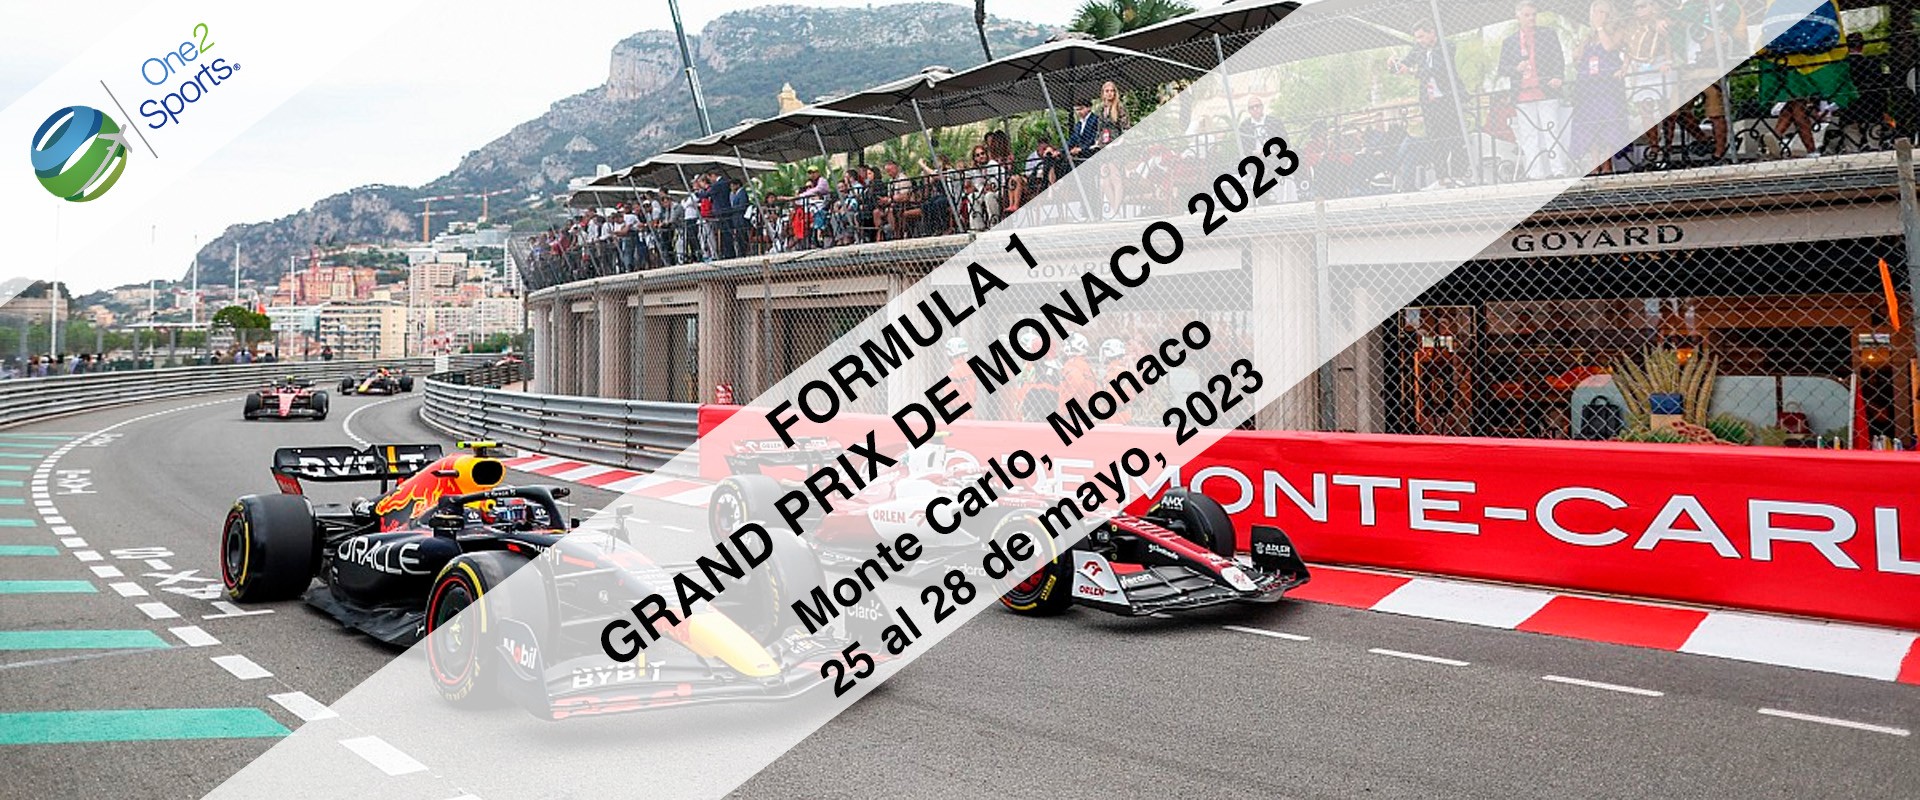 F1 Gran Premio de Mónaco